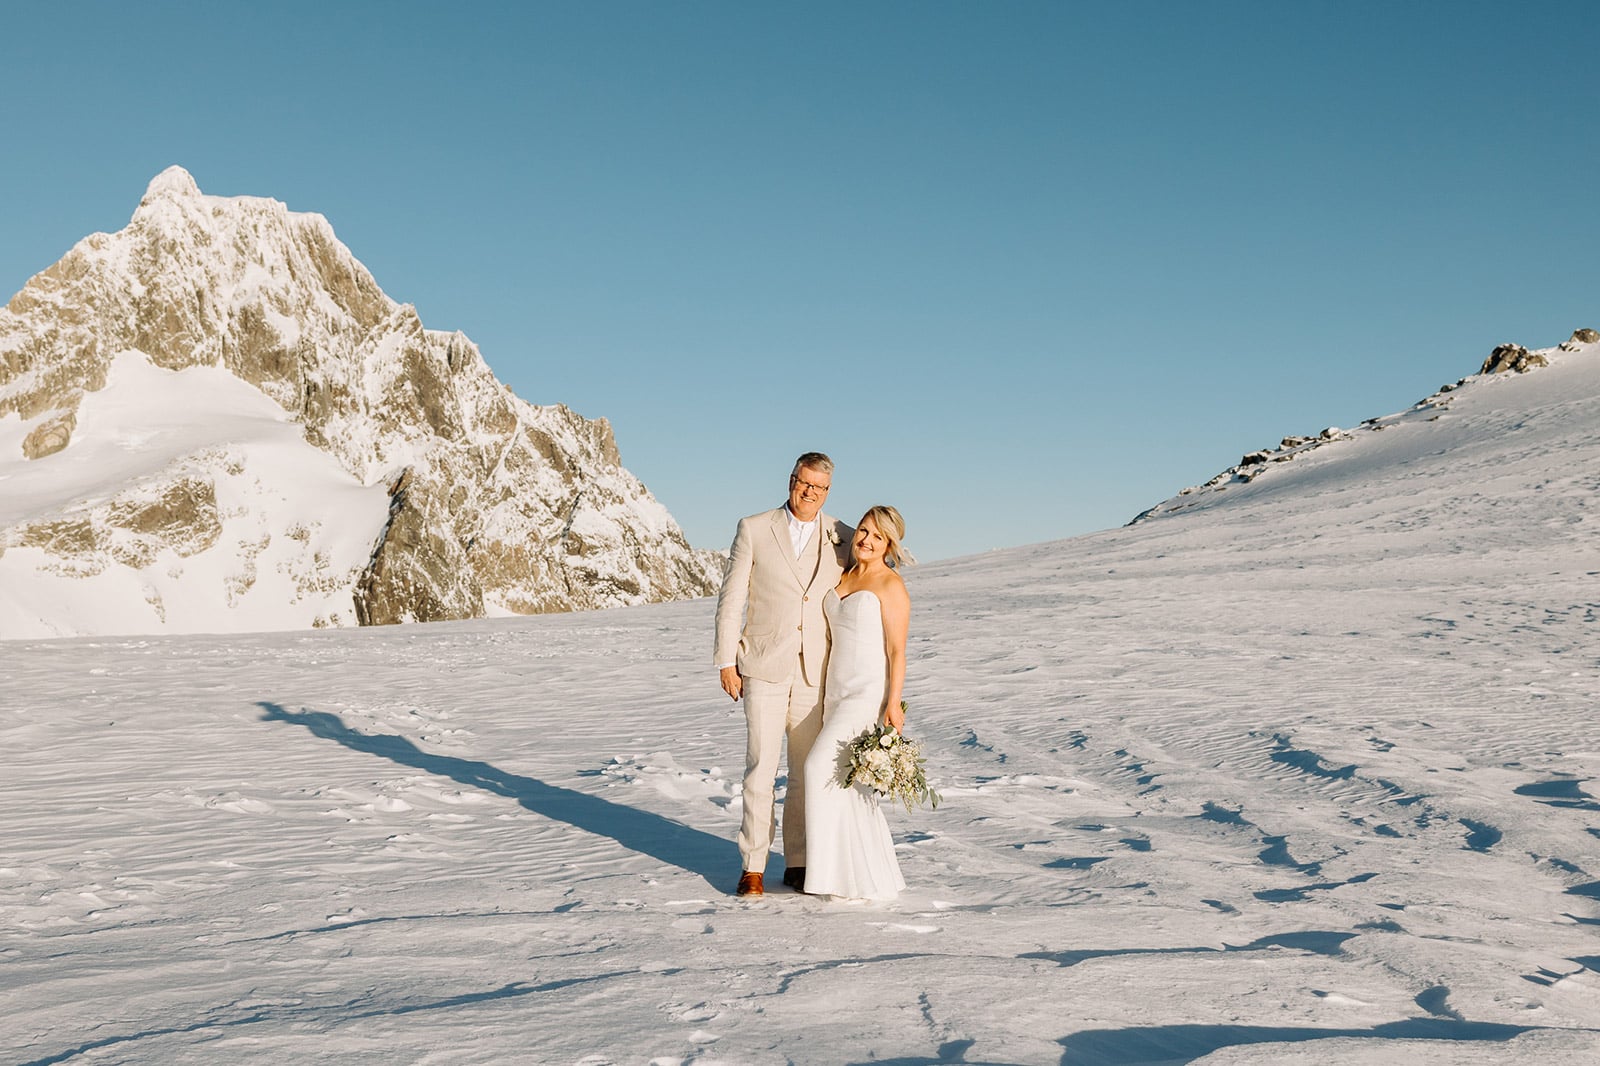 Luxury elopement wedding in Queenstown New Zealand. The Majestic Heli Wedding Glacier wedding photos